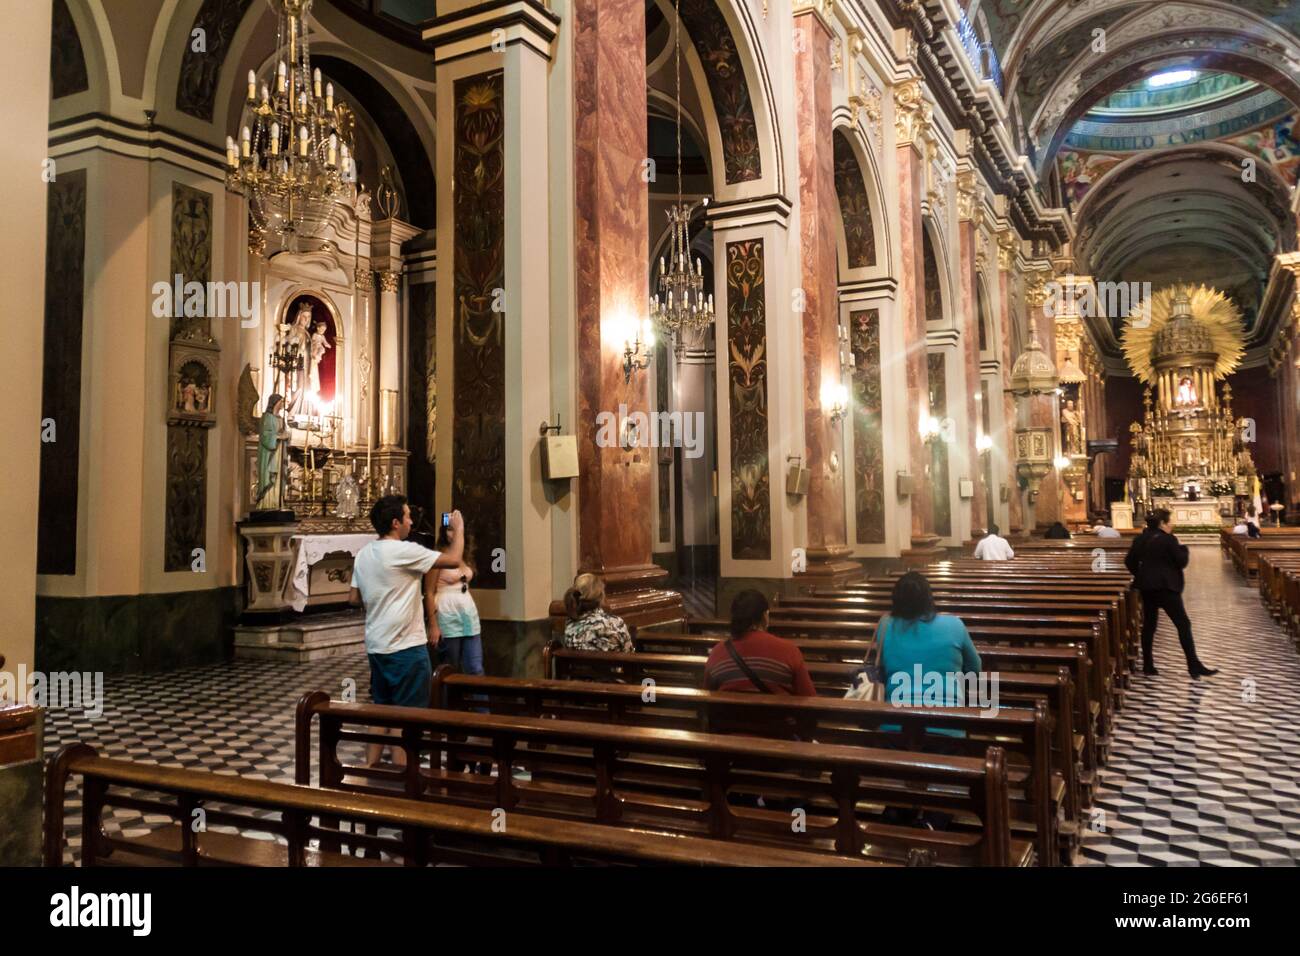 SALTA, ARGENTINIEN - 9. APRIL 2015: Innenraum der Kathedrale Basilika und Heiligtum des Herrn und der Jungfrau des Wunders in Salta, Argentinien. Stockfoto